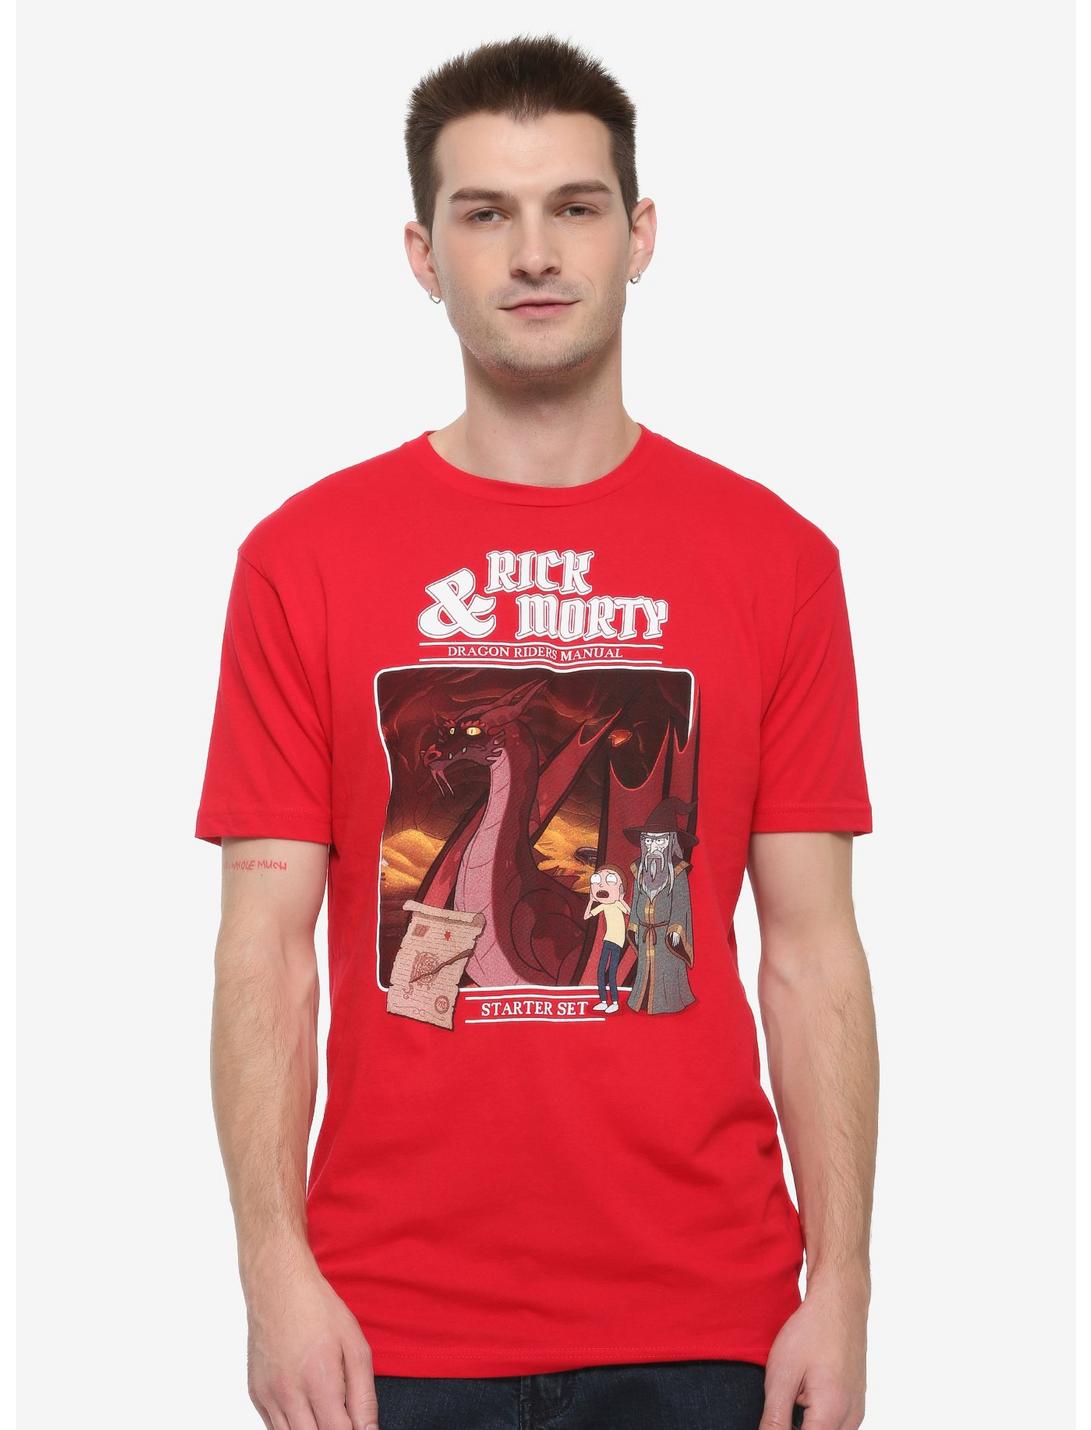 Rick and Morty Dragon Riders Manual T-Shirt, RED, hi-res